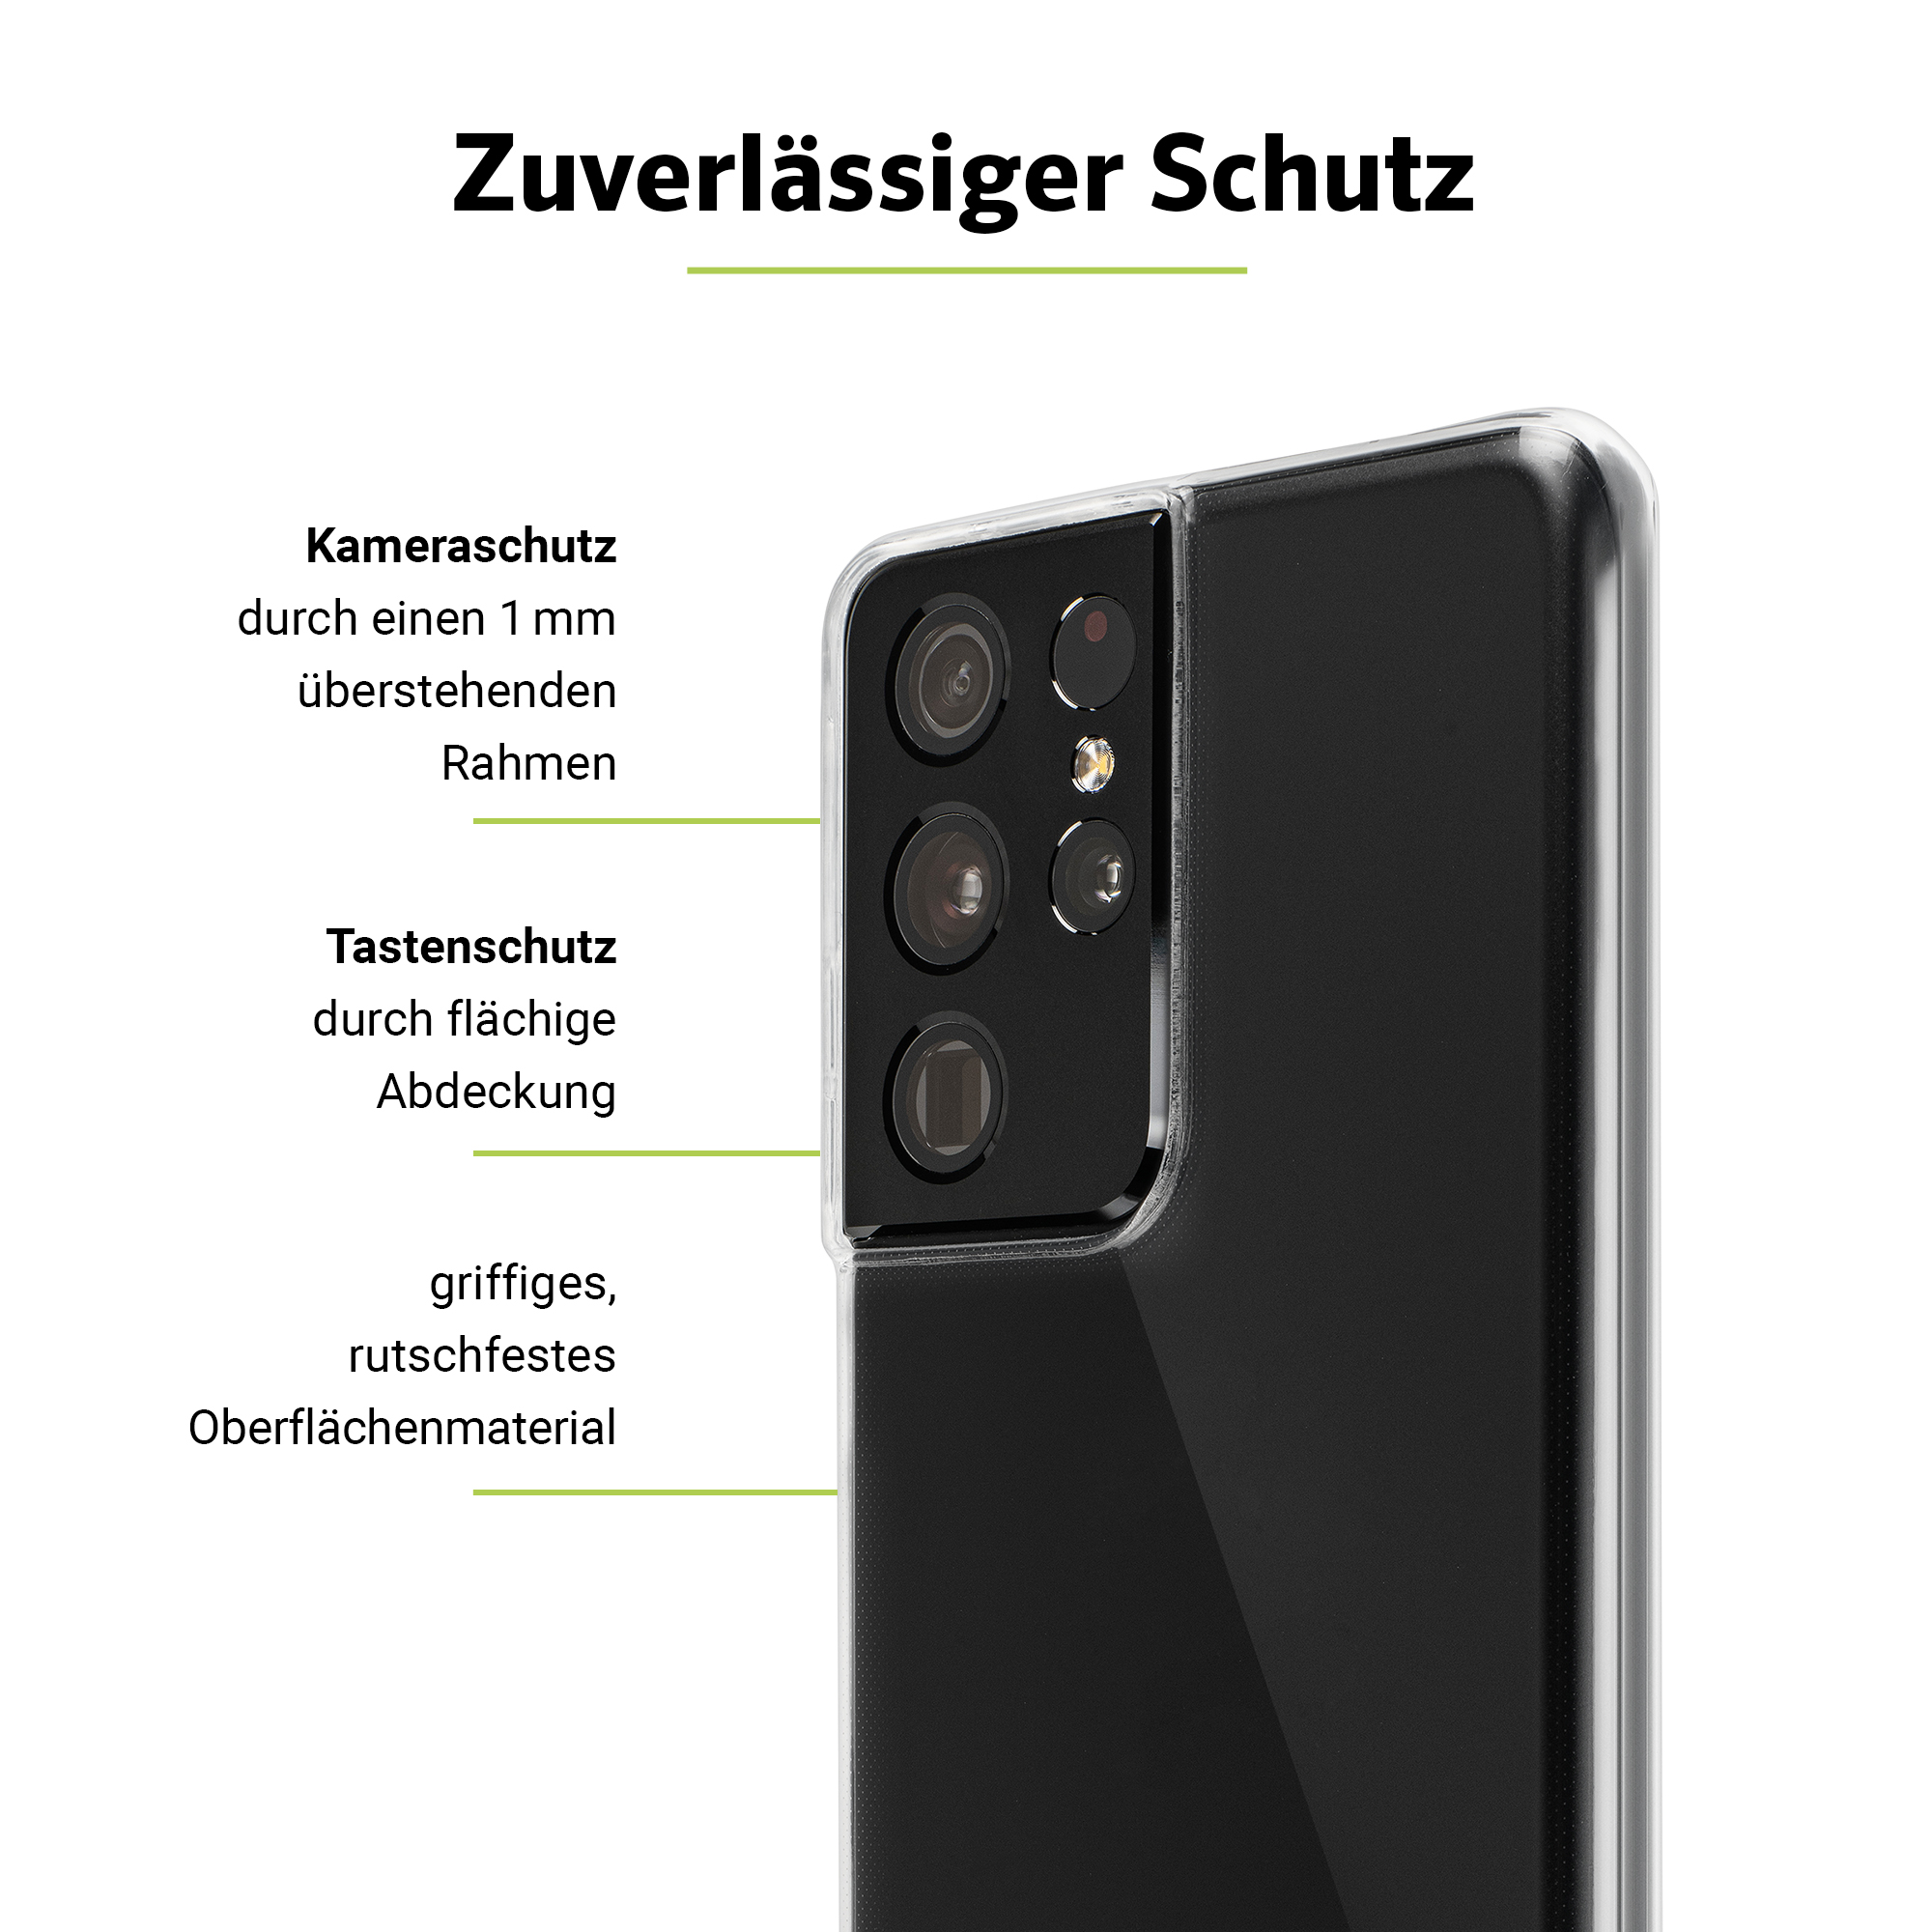 ARTWIZZ NoCase, Backcover, Galaxy A71, Transparent Samsung